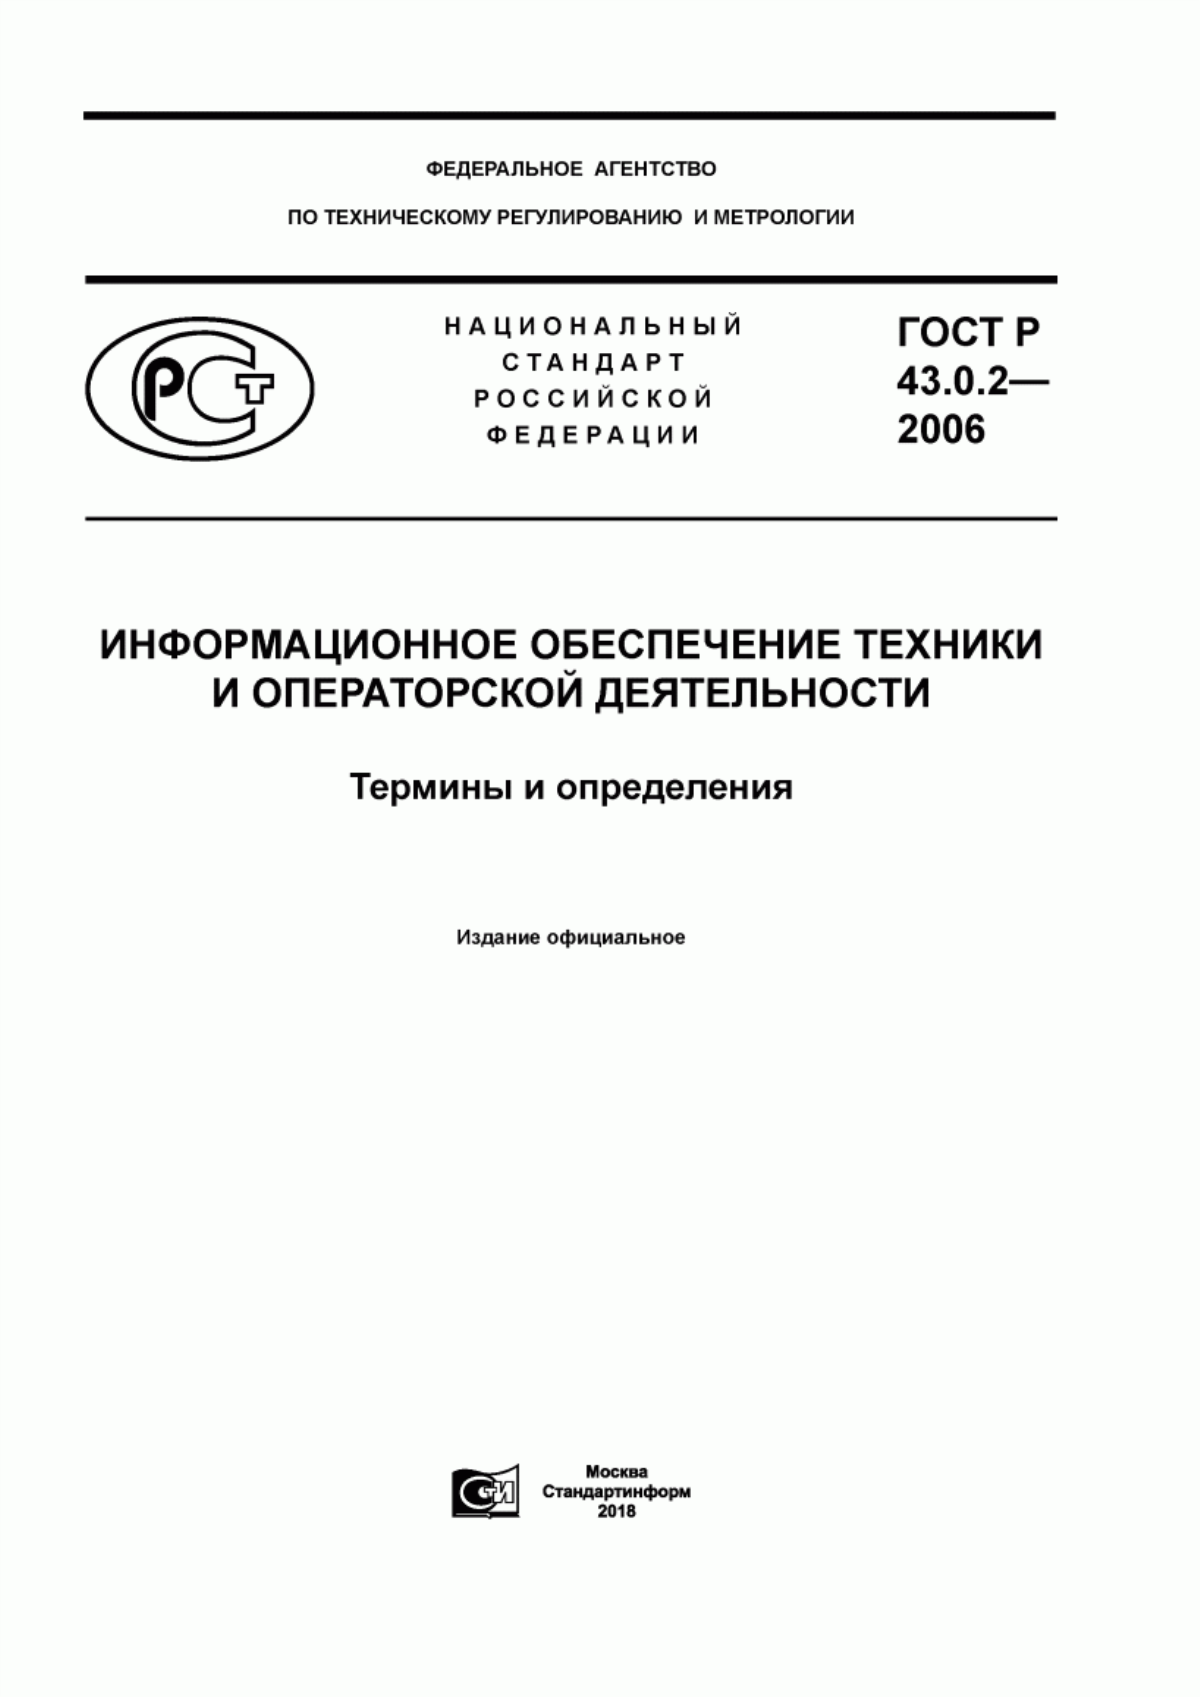 ГОСТ Р 43.0.2-2006 Информационное обеспечение техники и операторской деятельности. Термины и определения